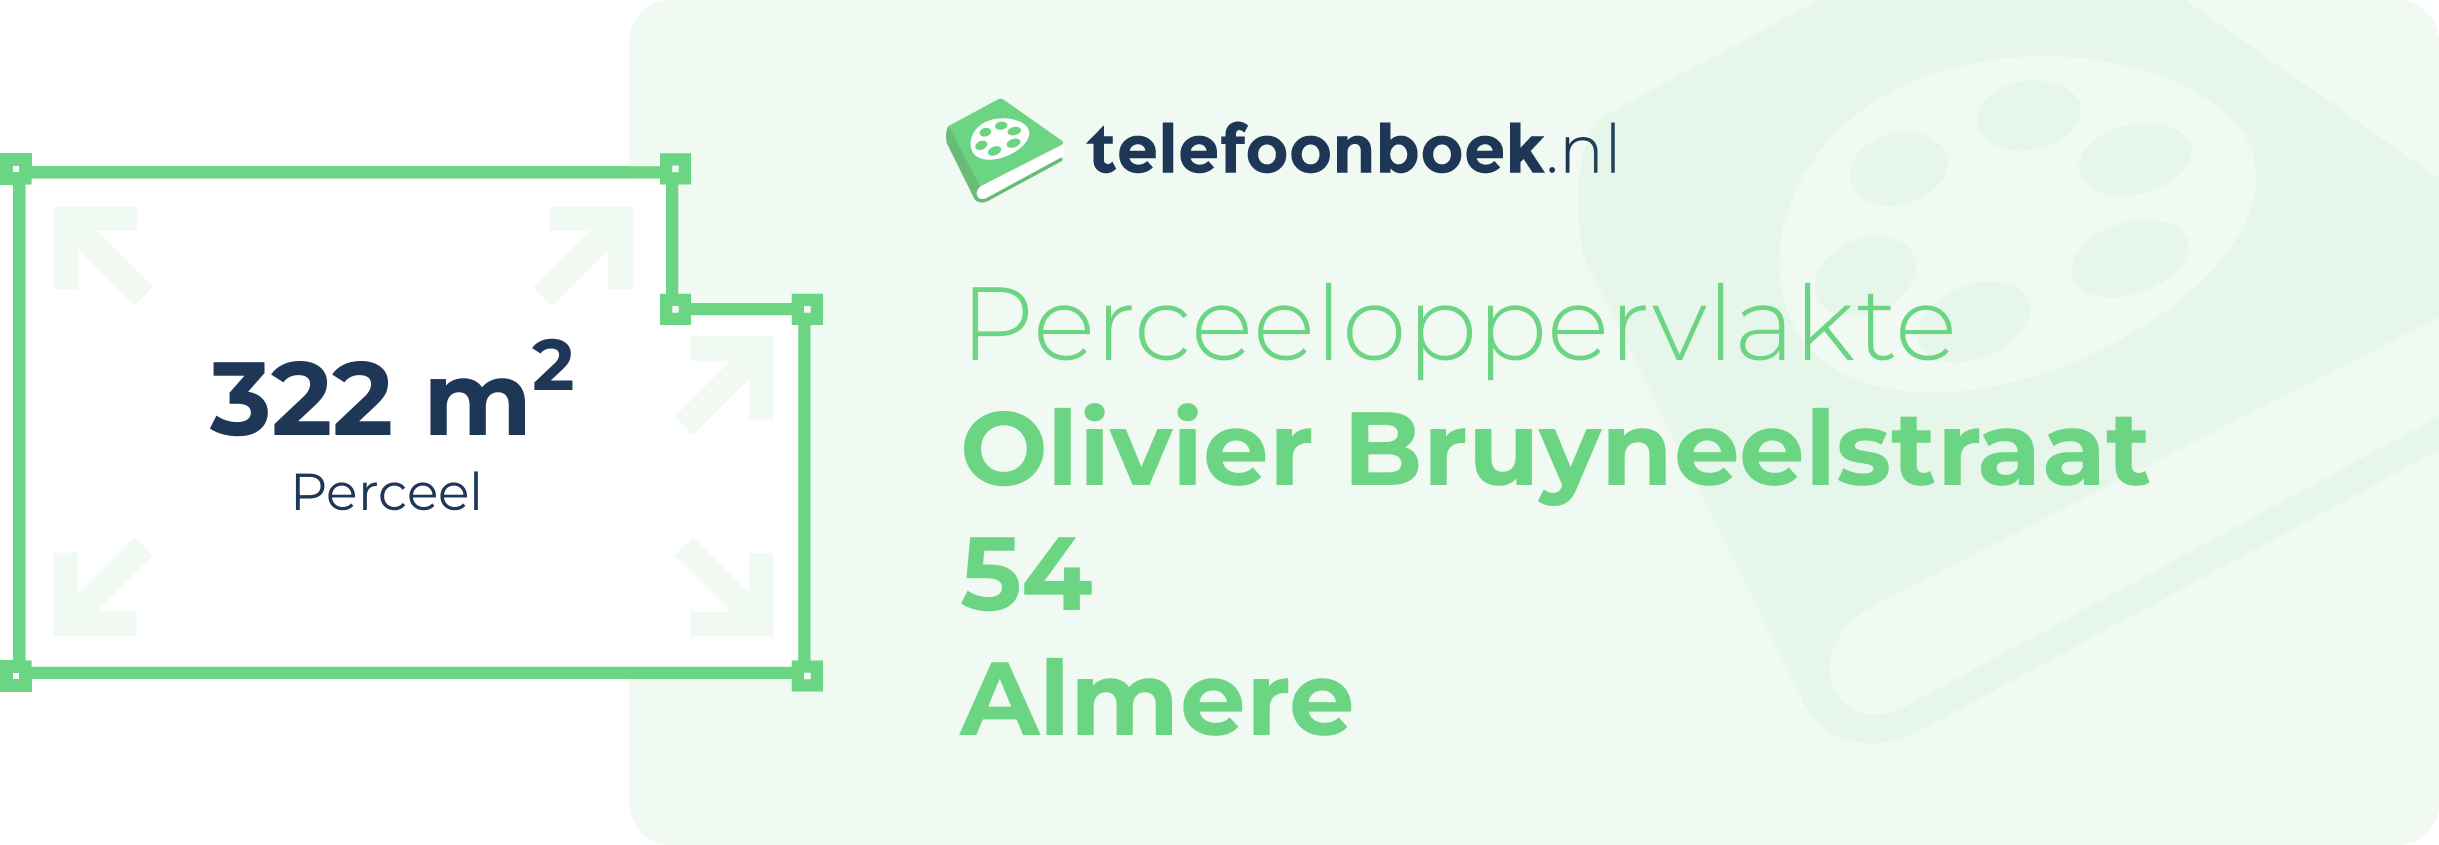 Perceeloppervlakte Olivier Bruyneelstraat 54 Almere